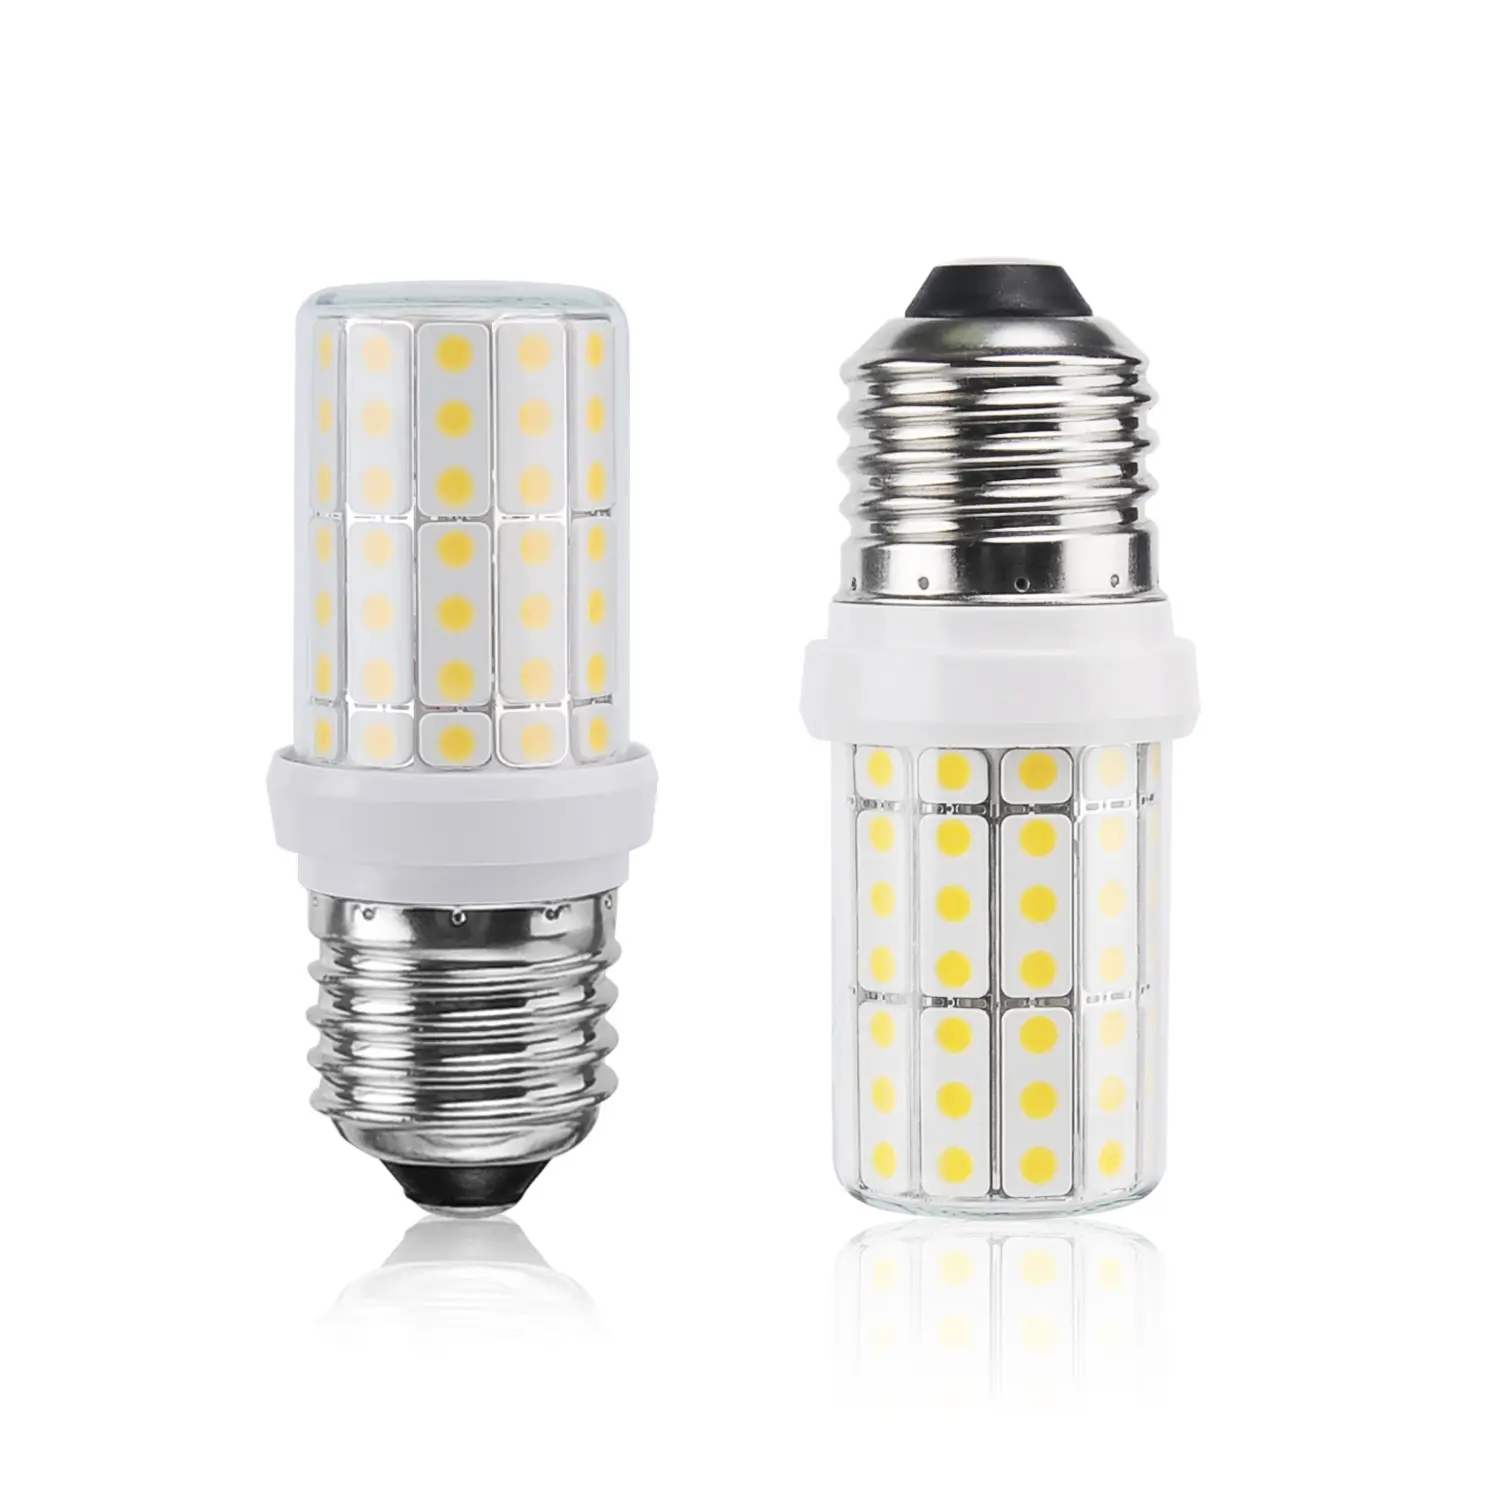 Led Bulbs For Lamps High Quality And High Brightness Household 6w 20w Led Light Bulb E27 E26 Lamp Holder For Indoor Energy Saving Corn Light Bulb